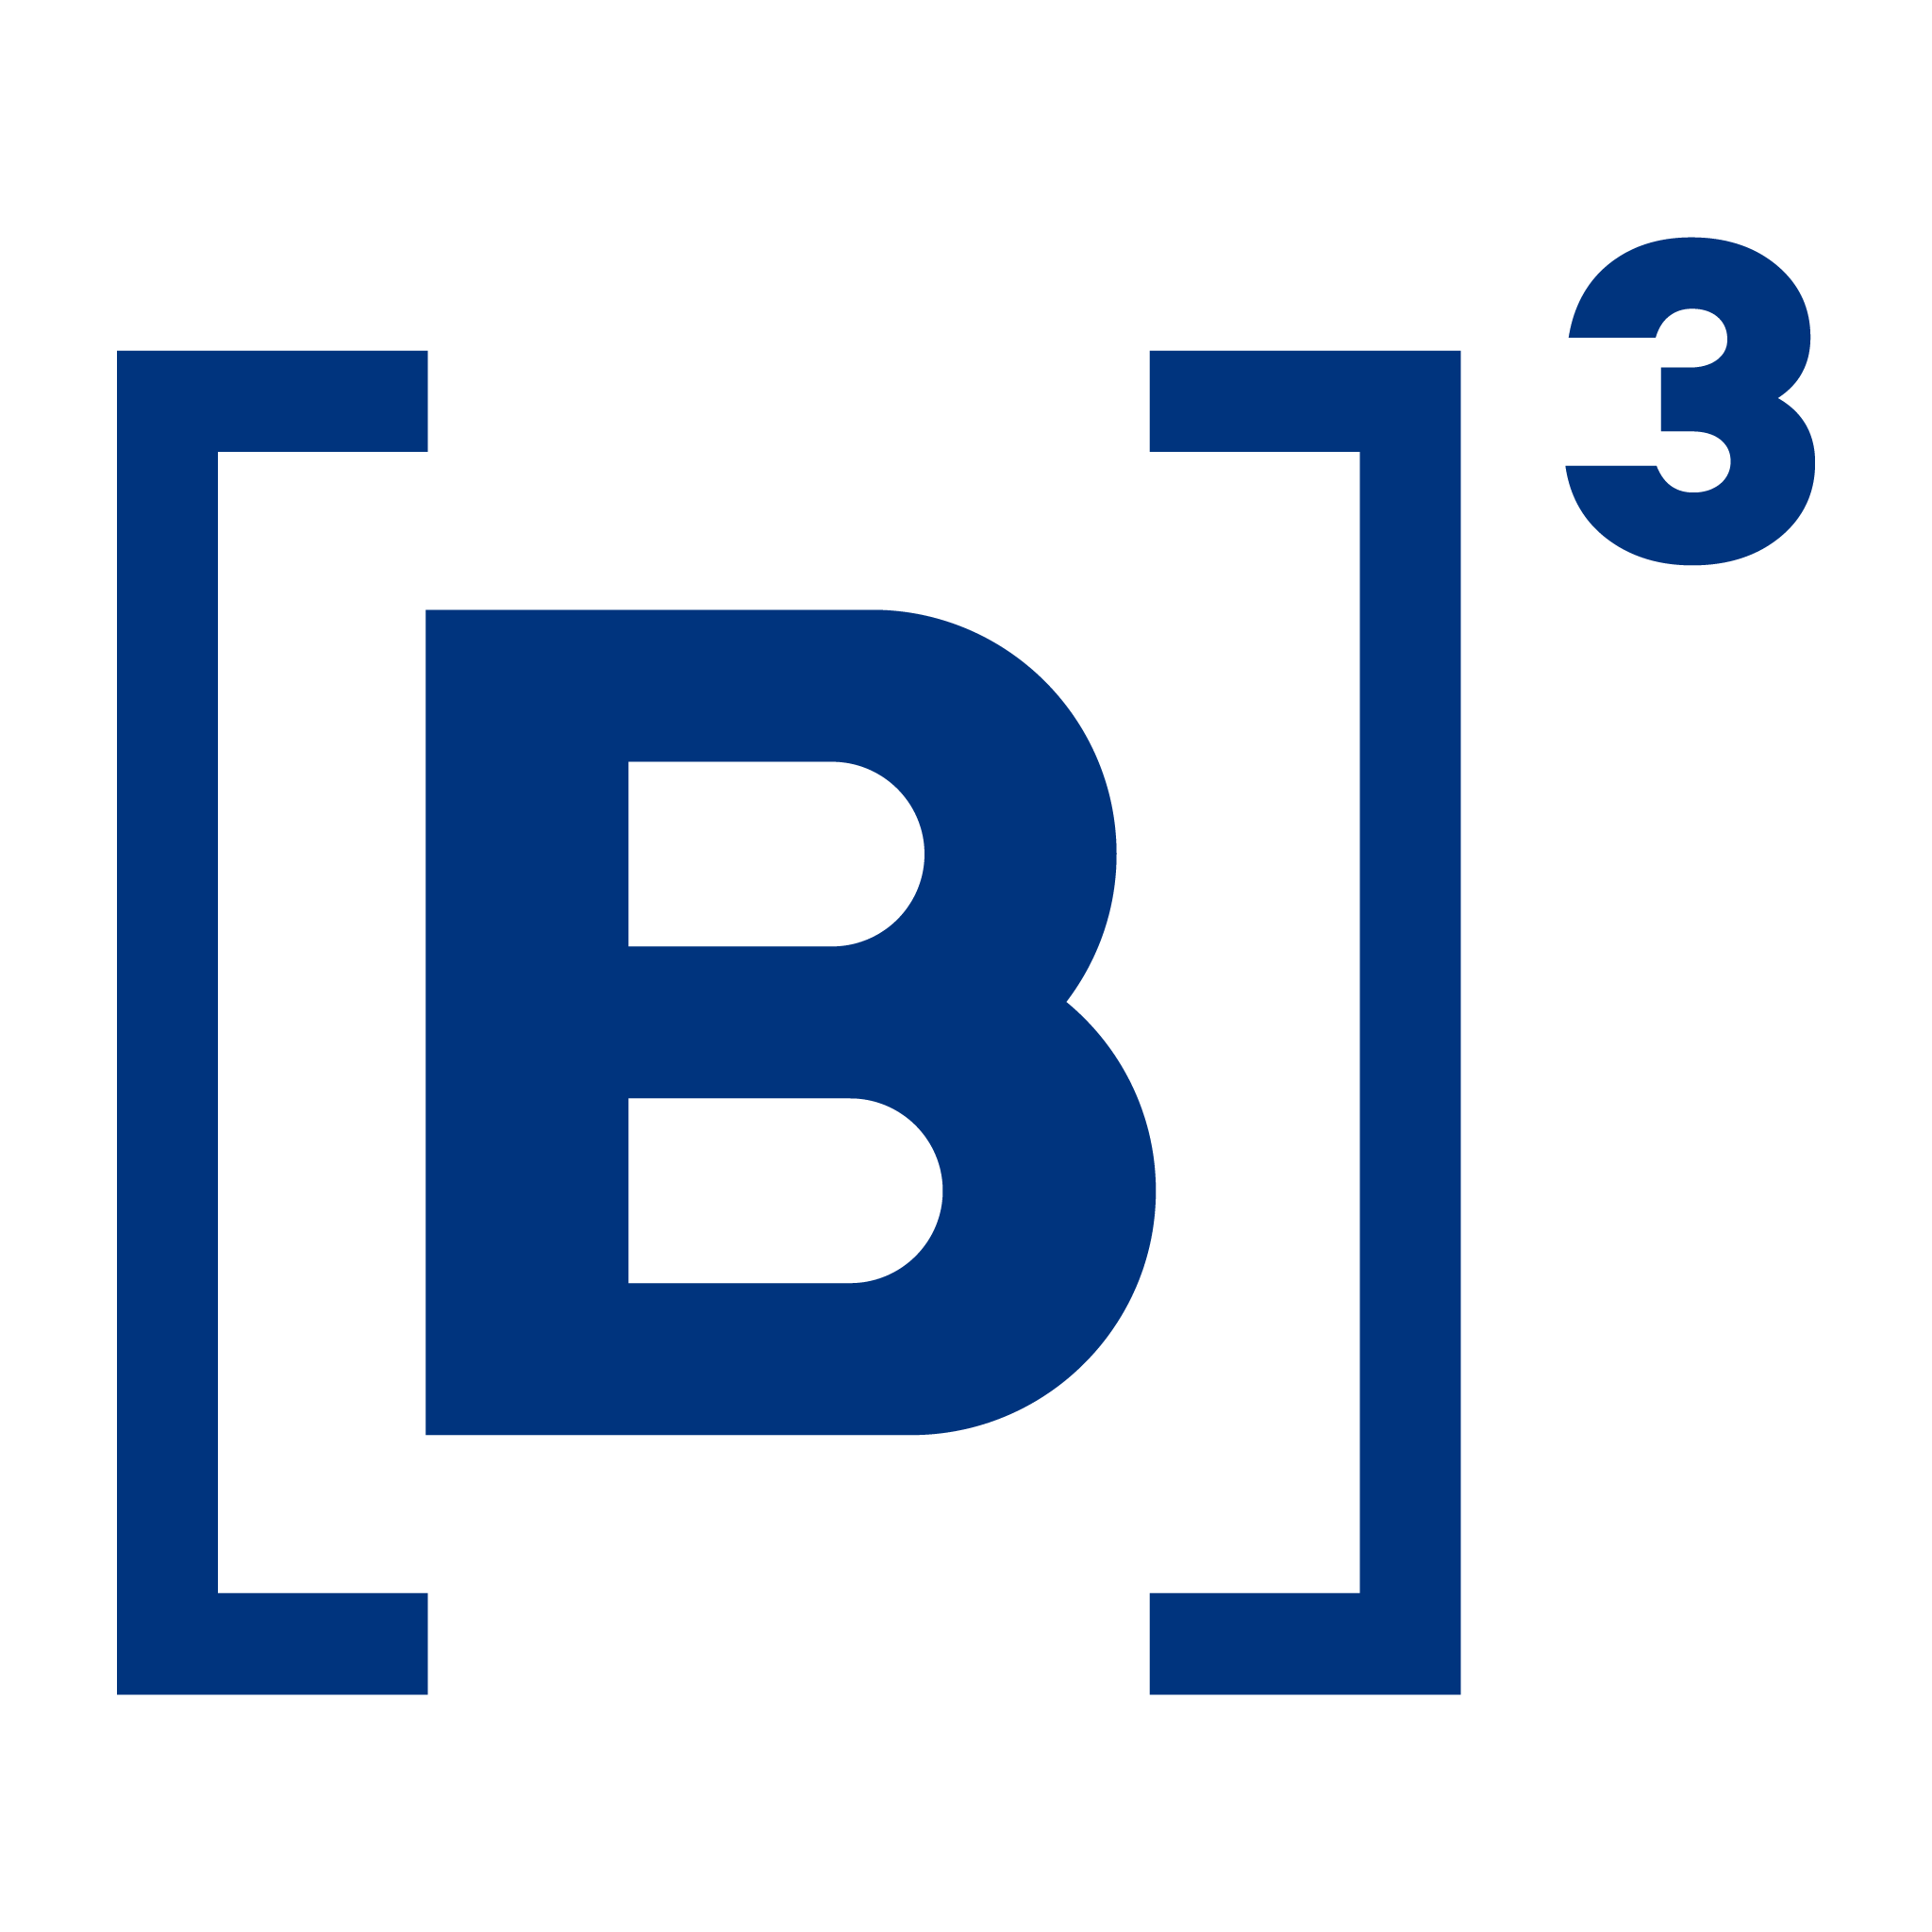 Logo B3 Brasil Bolsa Bal o Logos PNG